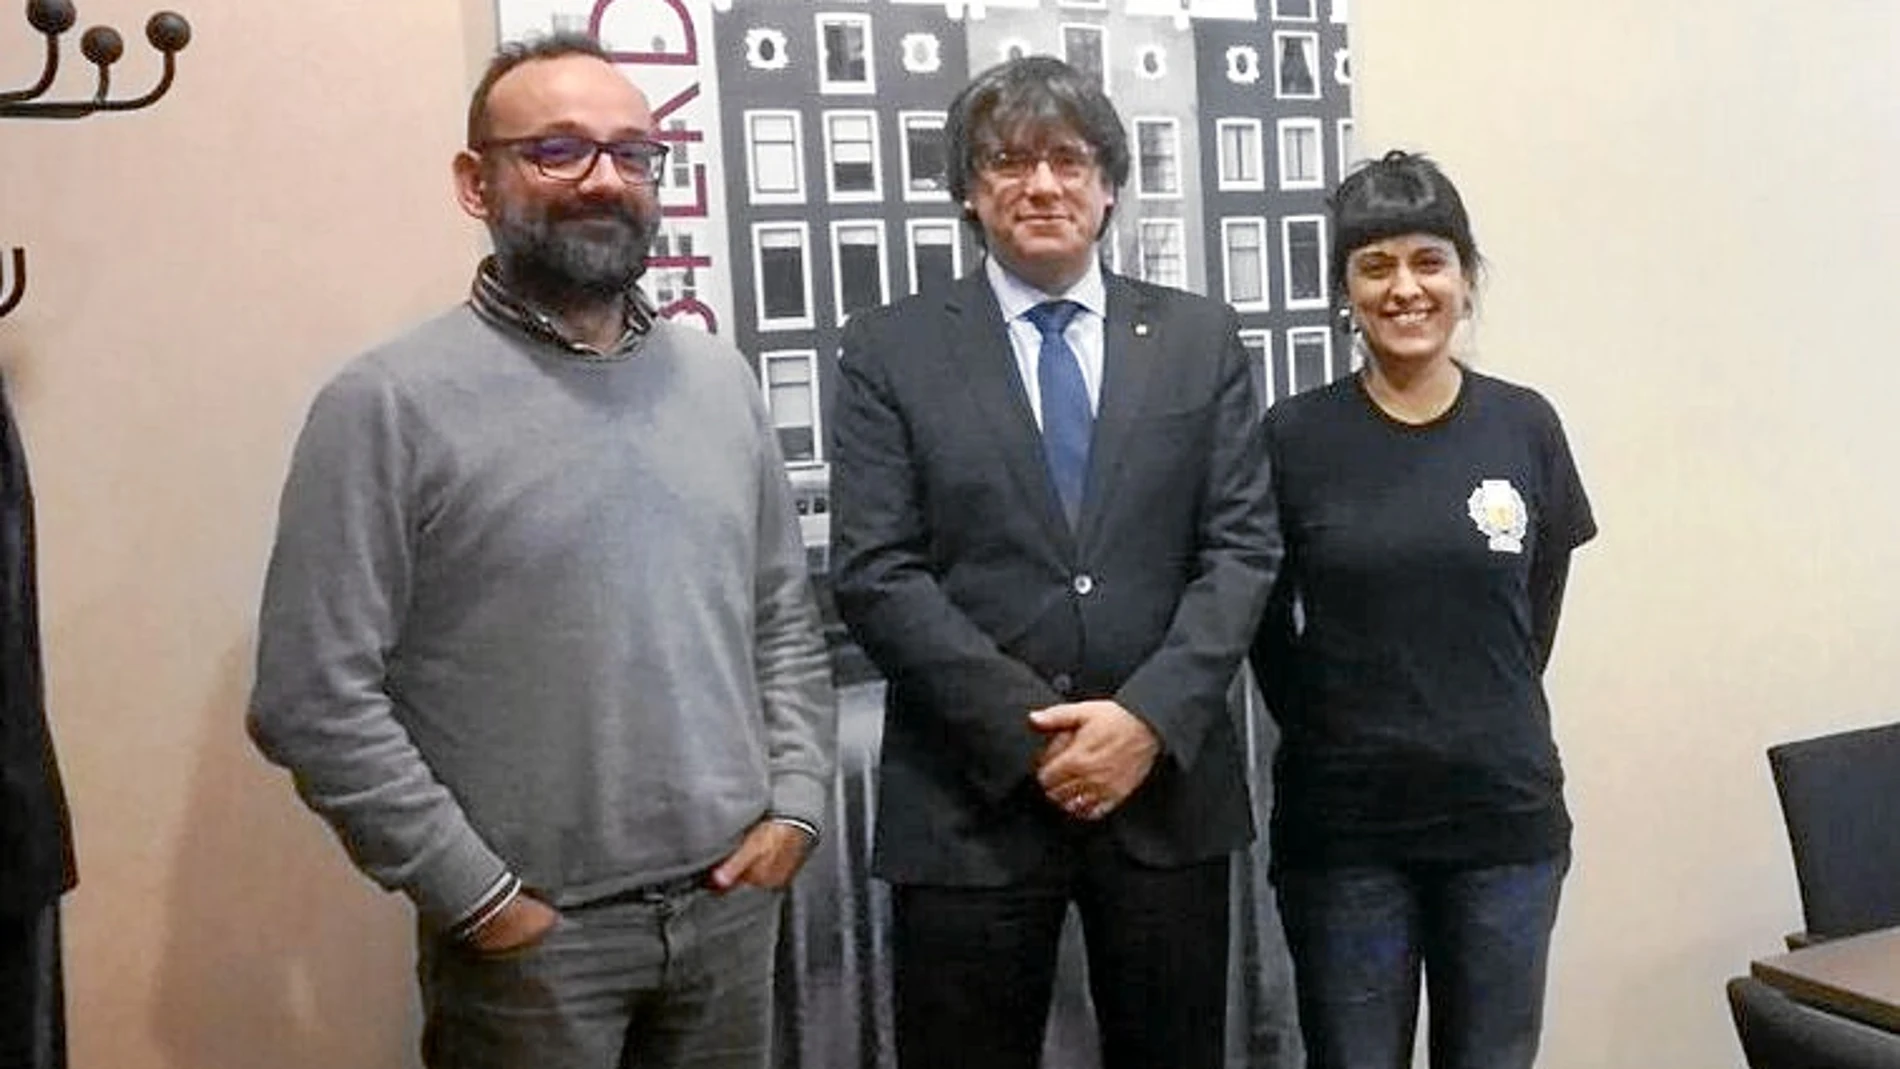 Benet Salellas y Anna Gabriel visitaron ayer a Puigdemont en Bruselas